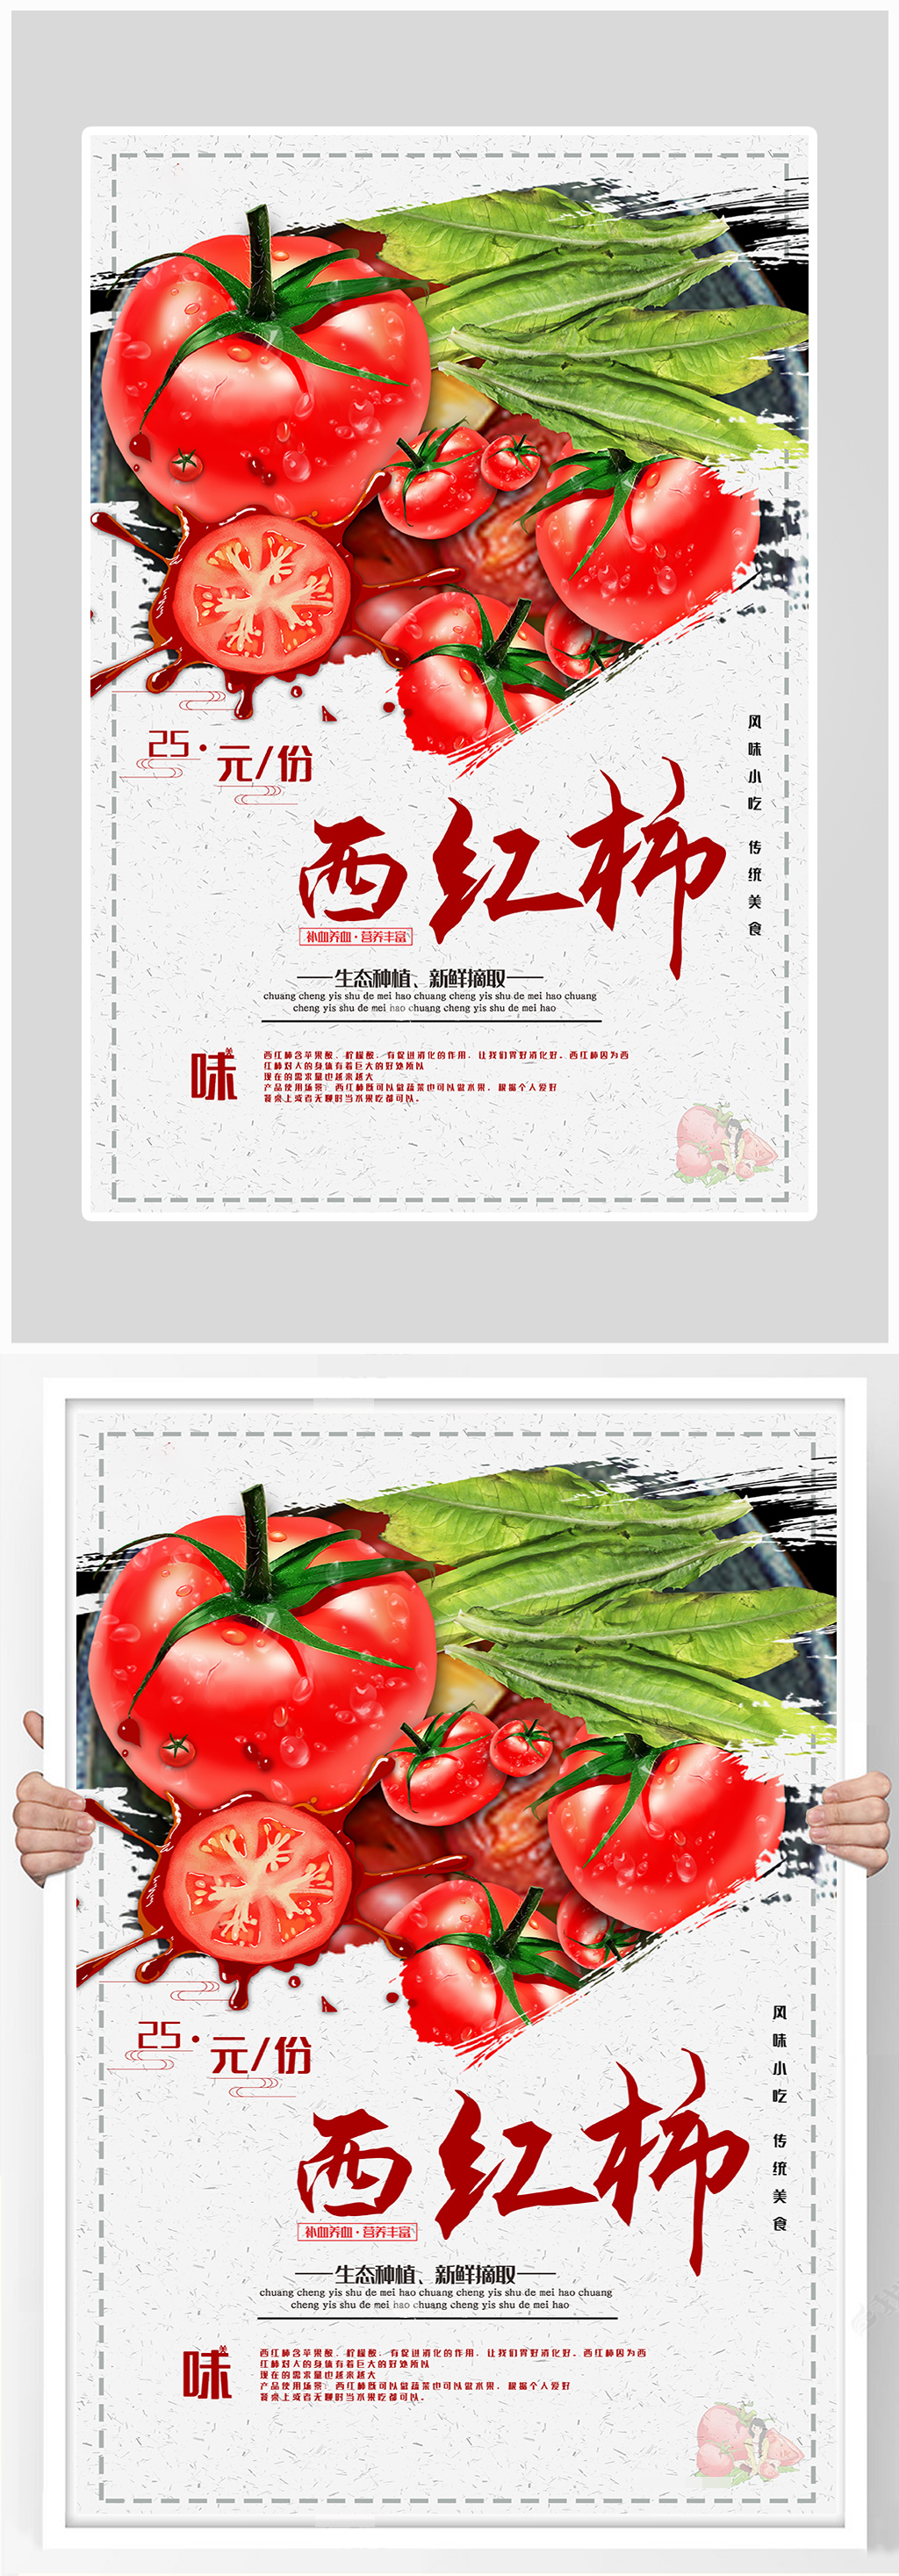 创意西红柿有机蔬菜海报设计